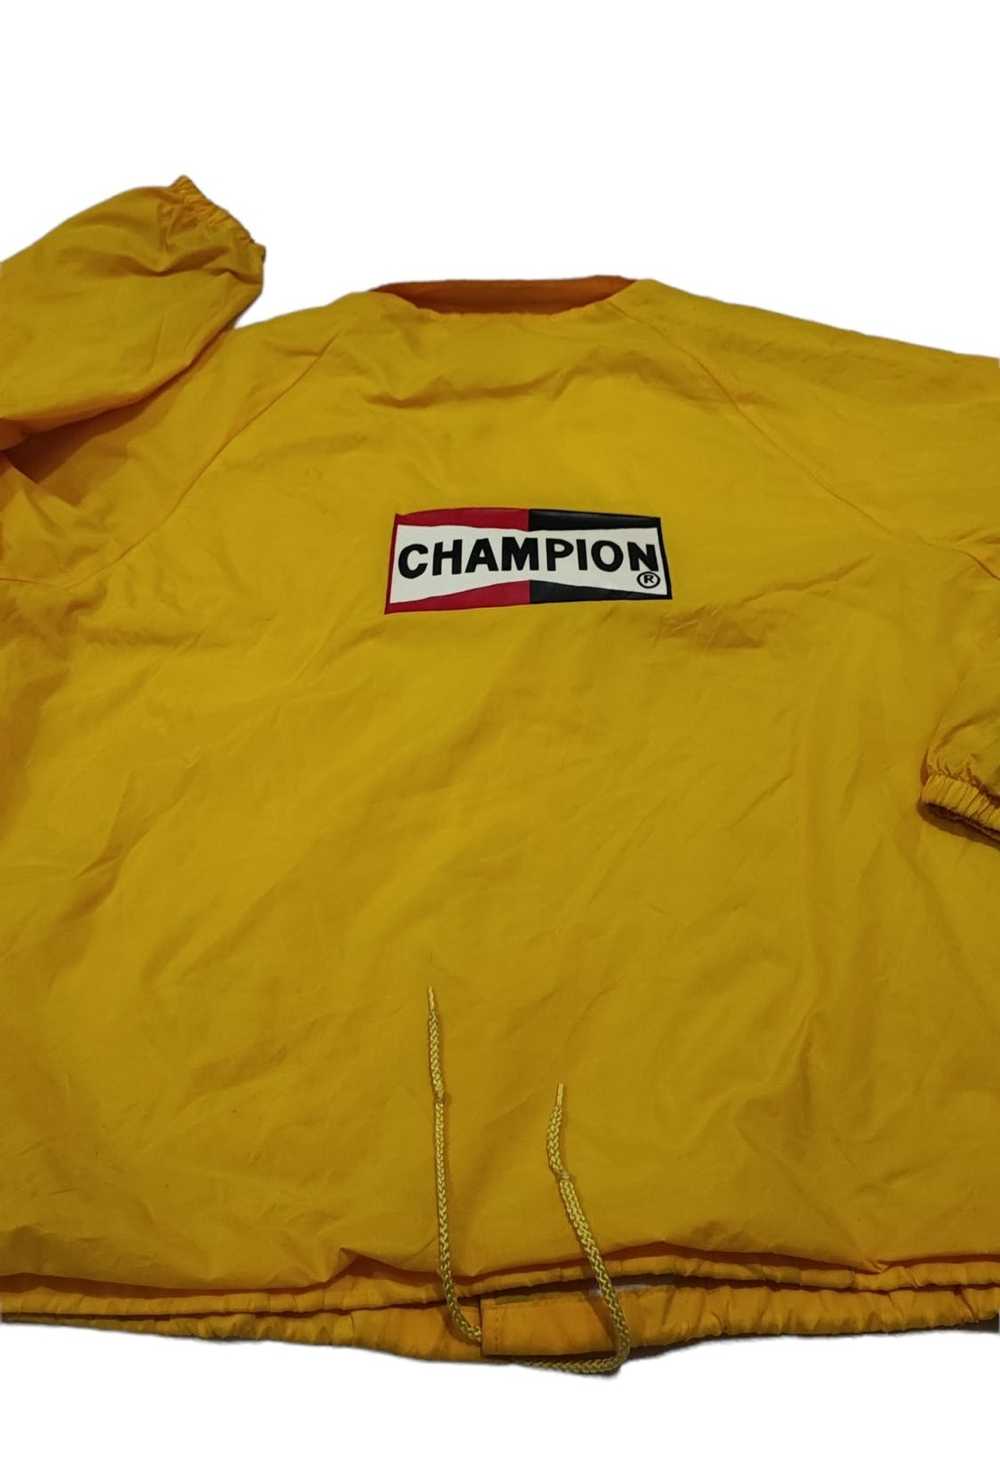 Champion × Racing × Vintage Vintage Champion Raci… - image 6